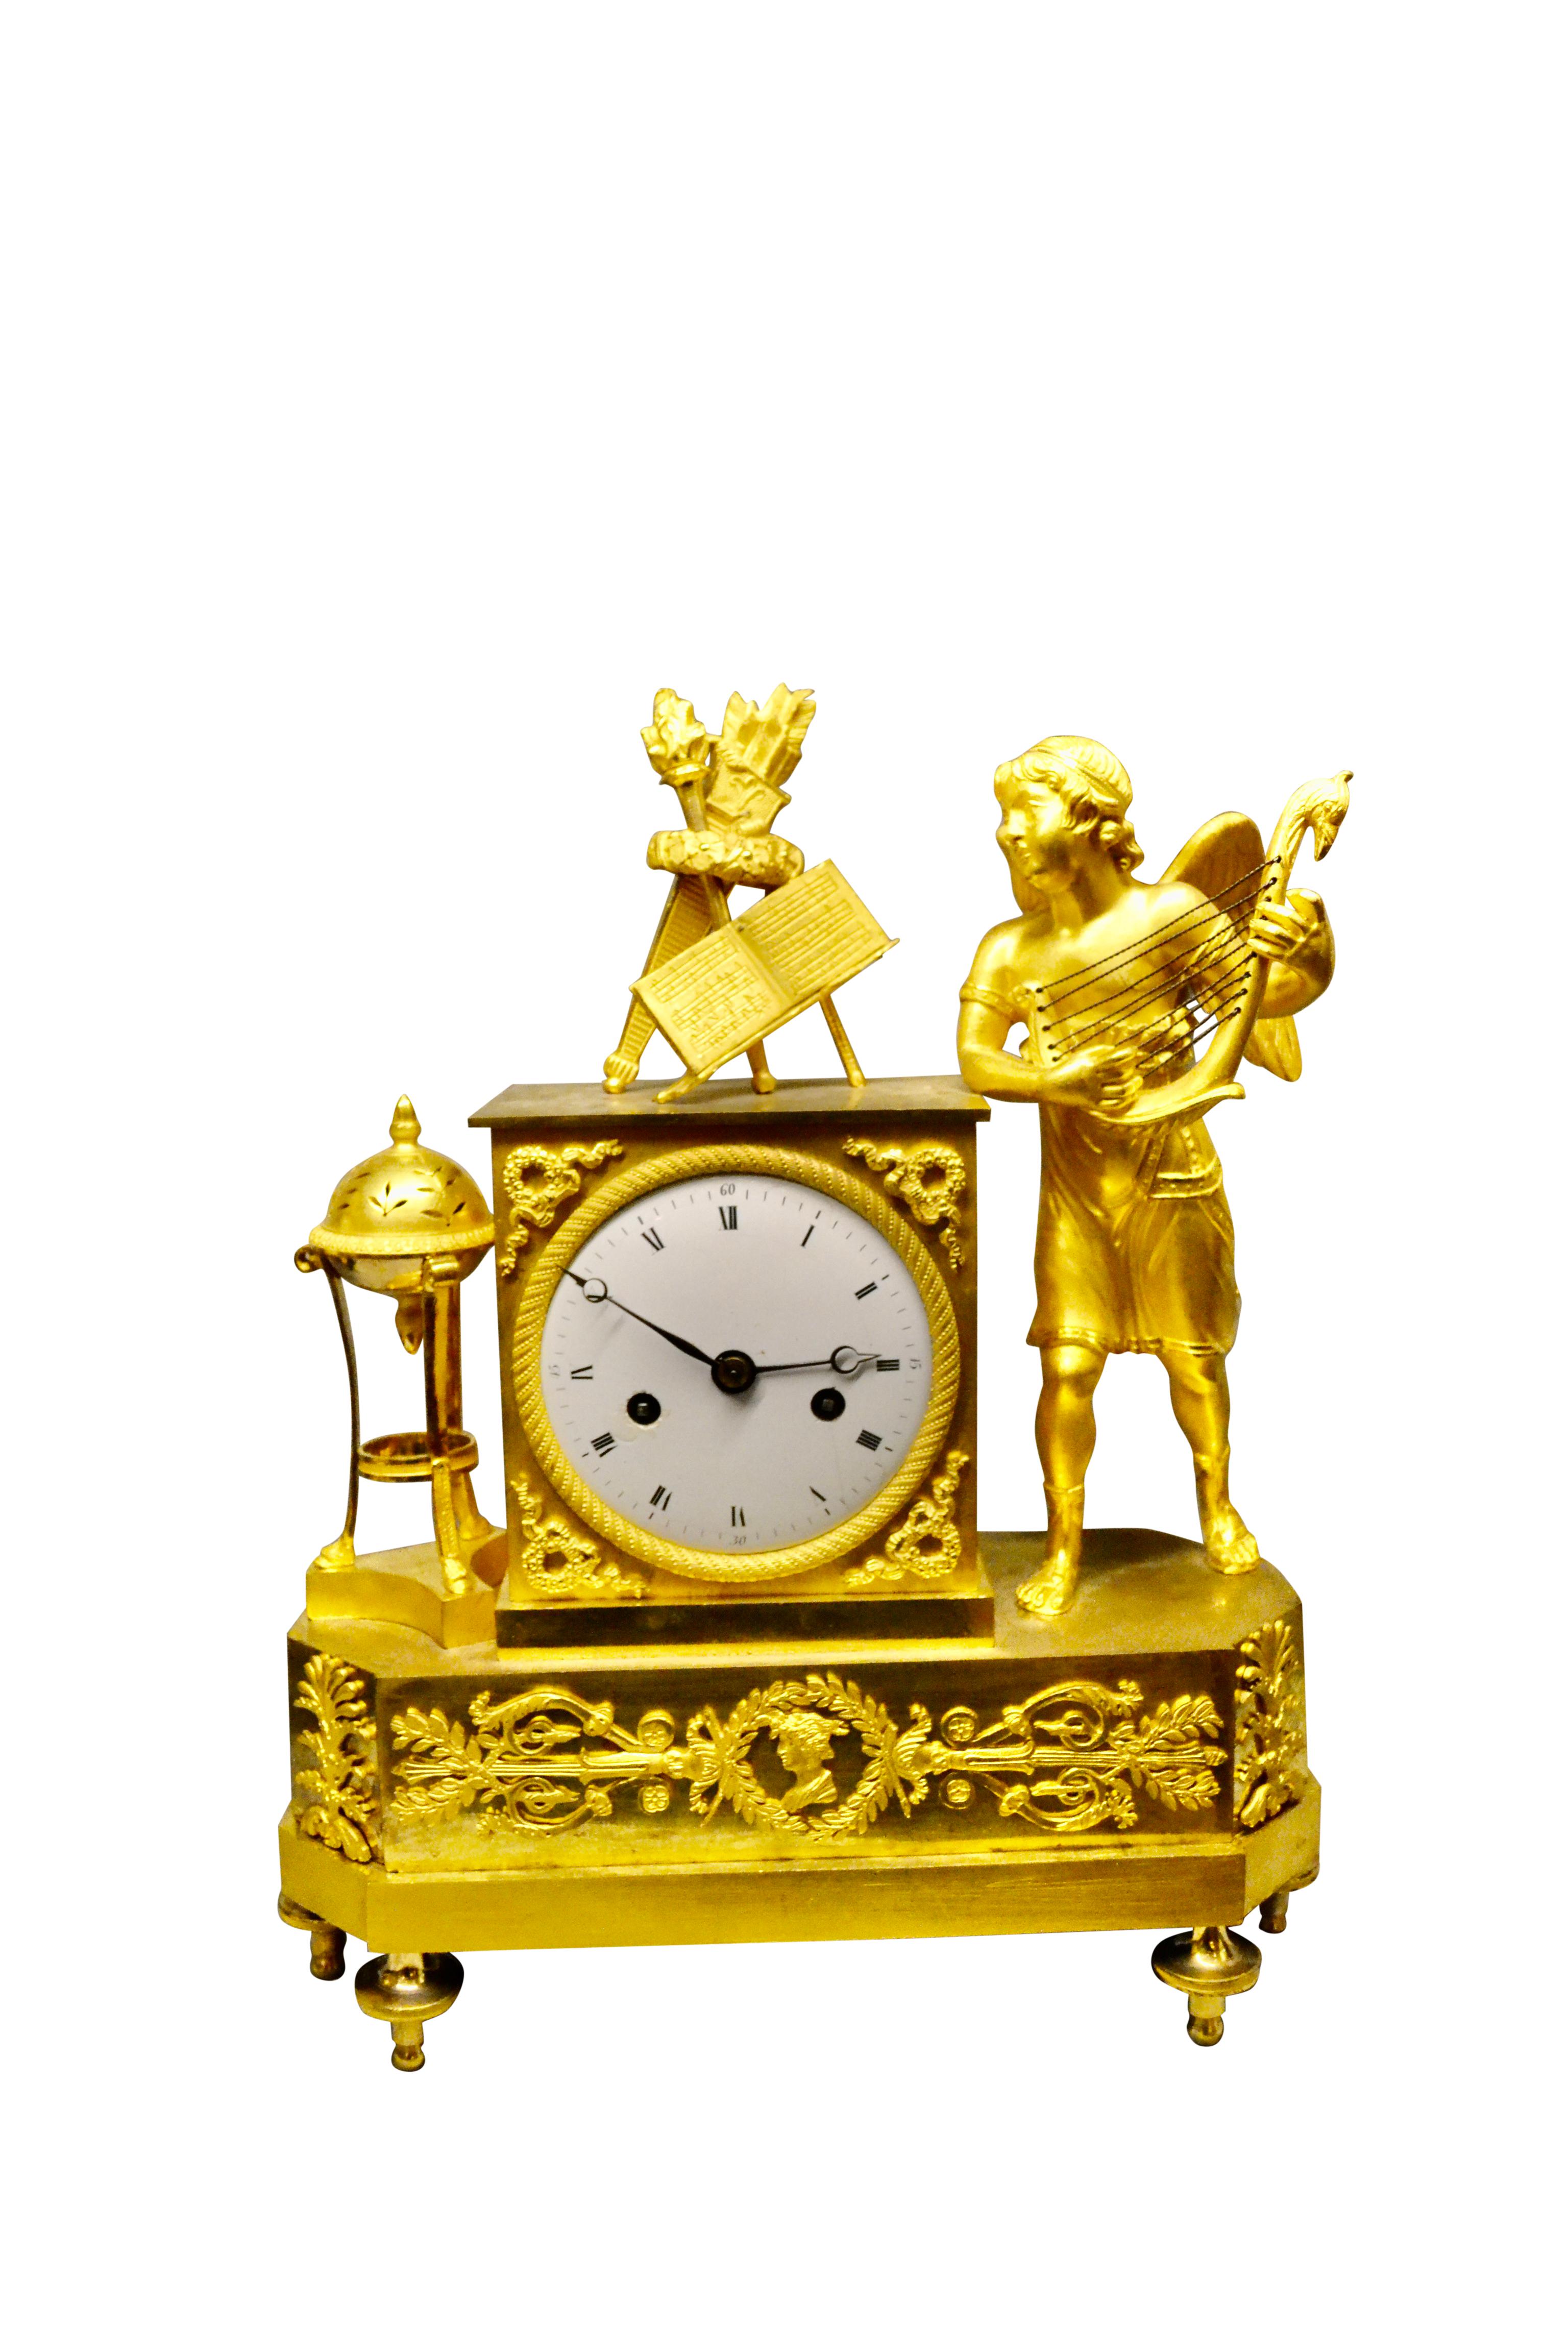 Pendule de cheminée Empire française de belle qualité, ciselée et dorée, représentant un cupidon ailé debout à droite du socle de l'horloge, jouant du luth.  Il regarde à sa droite en lisant ses partitions et d'autres éléments, notamment une torche,